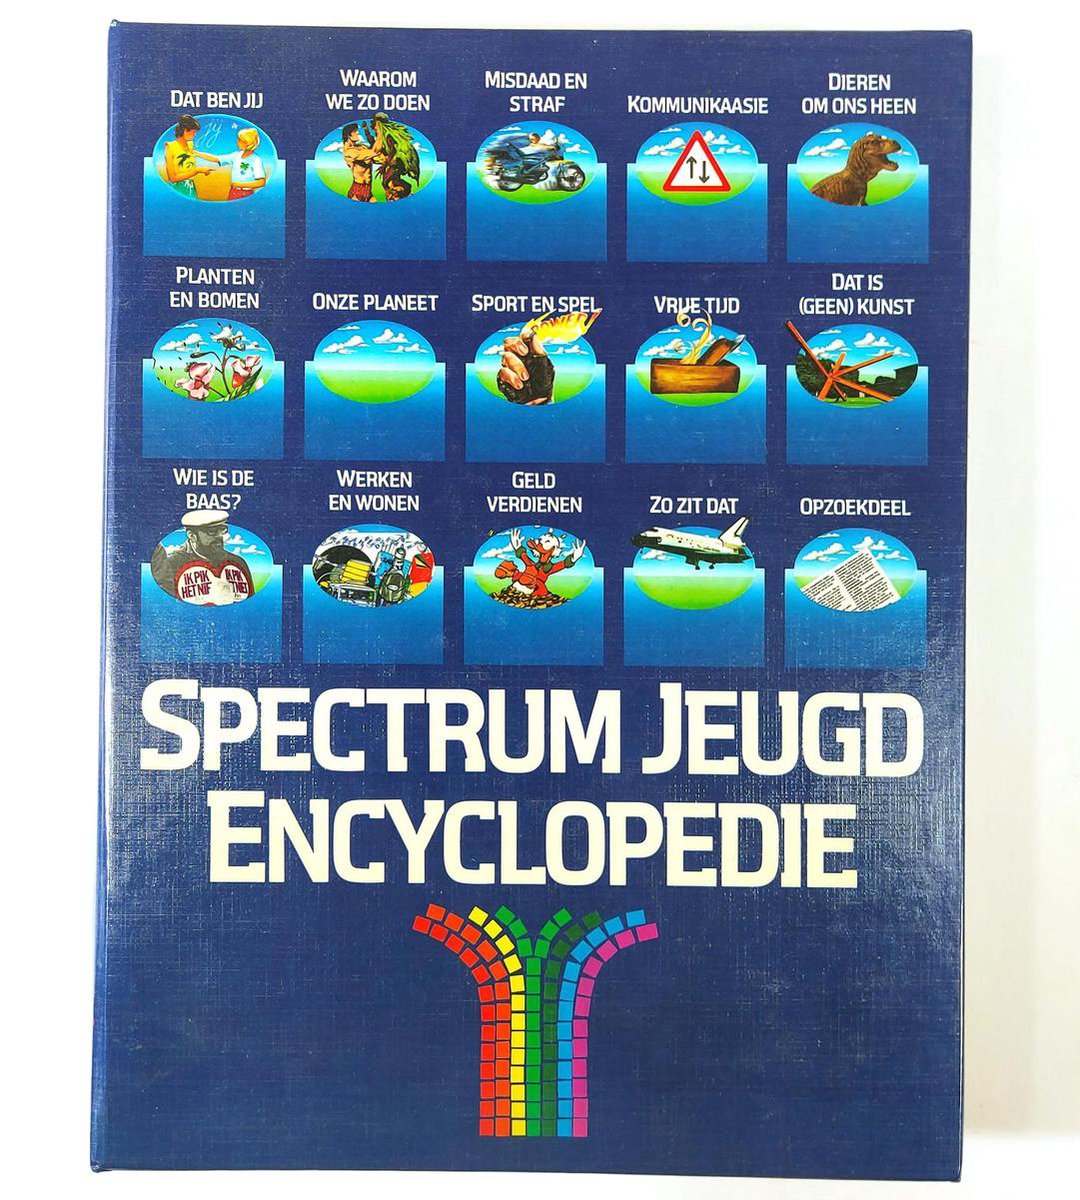 Spectrum jeud encyclopedie cpl